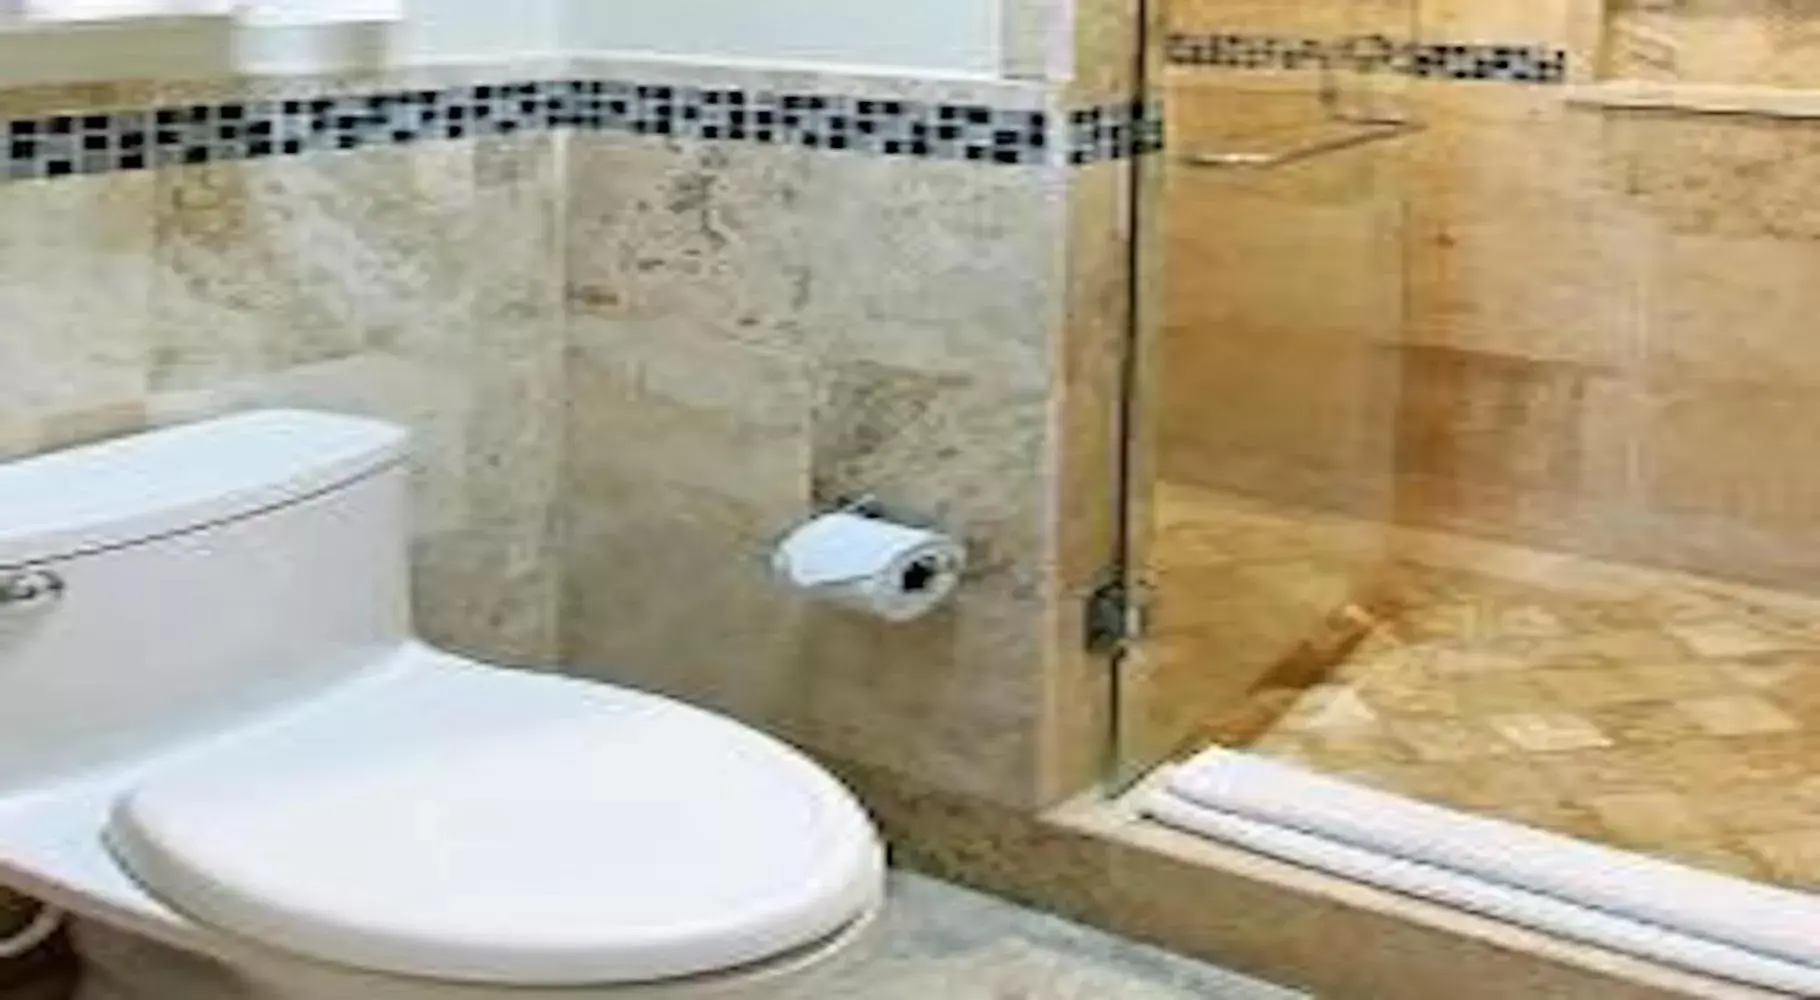 Bathroom in Acanto Hotel Playa del Carmen, Trademark Collection by Wyndham